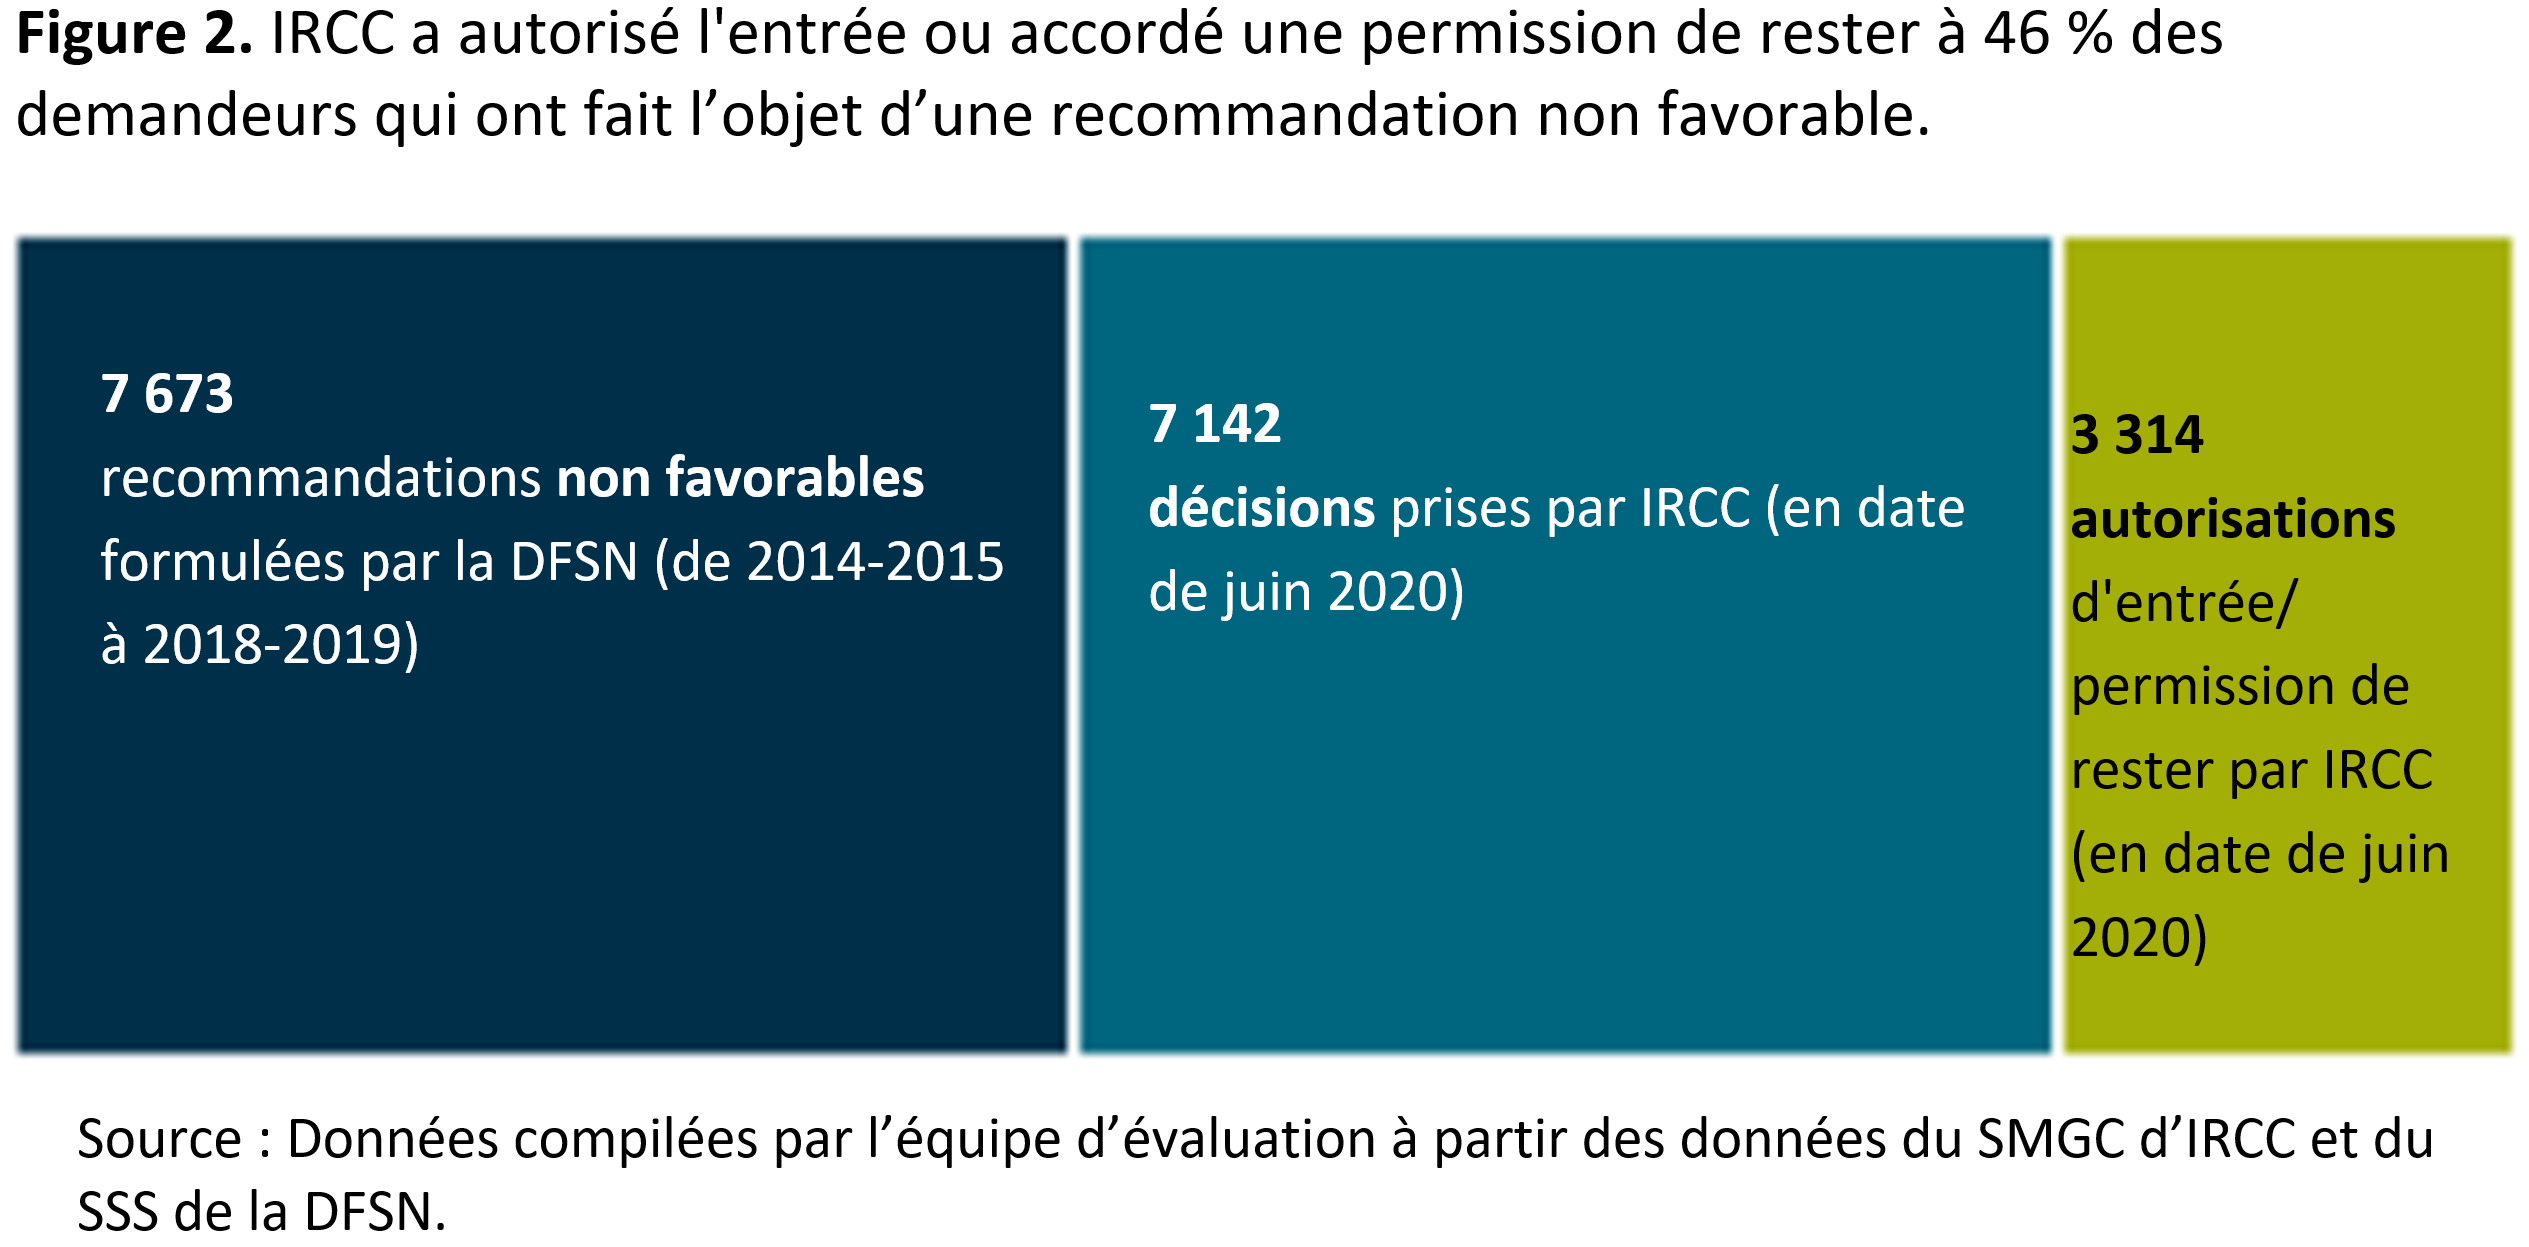 La figure 2 montre qu’<abbr>IRCC</abbr> a autorisé l'entrée ou accordé une permission de rester à 46 % des demandeurs qui ont fait l’objet d’une recommandation non favorable.